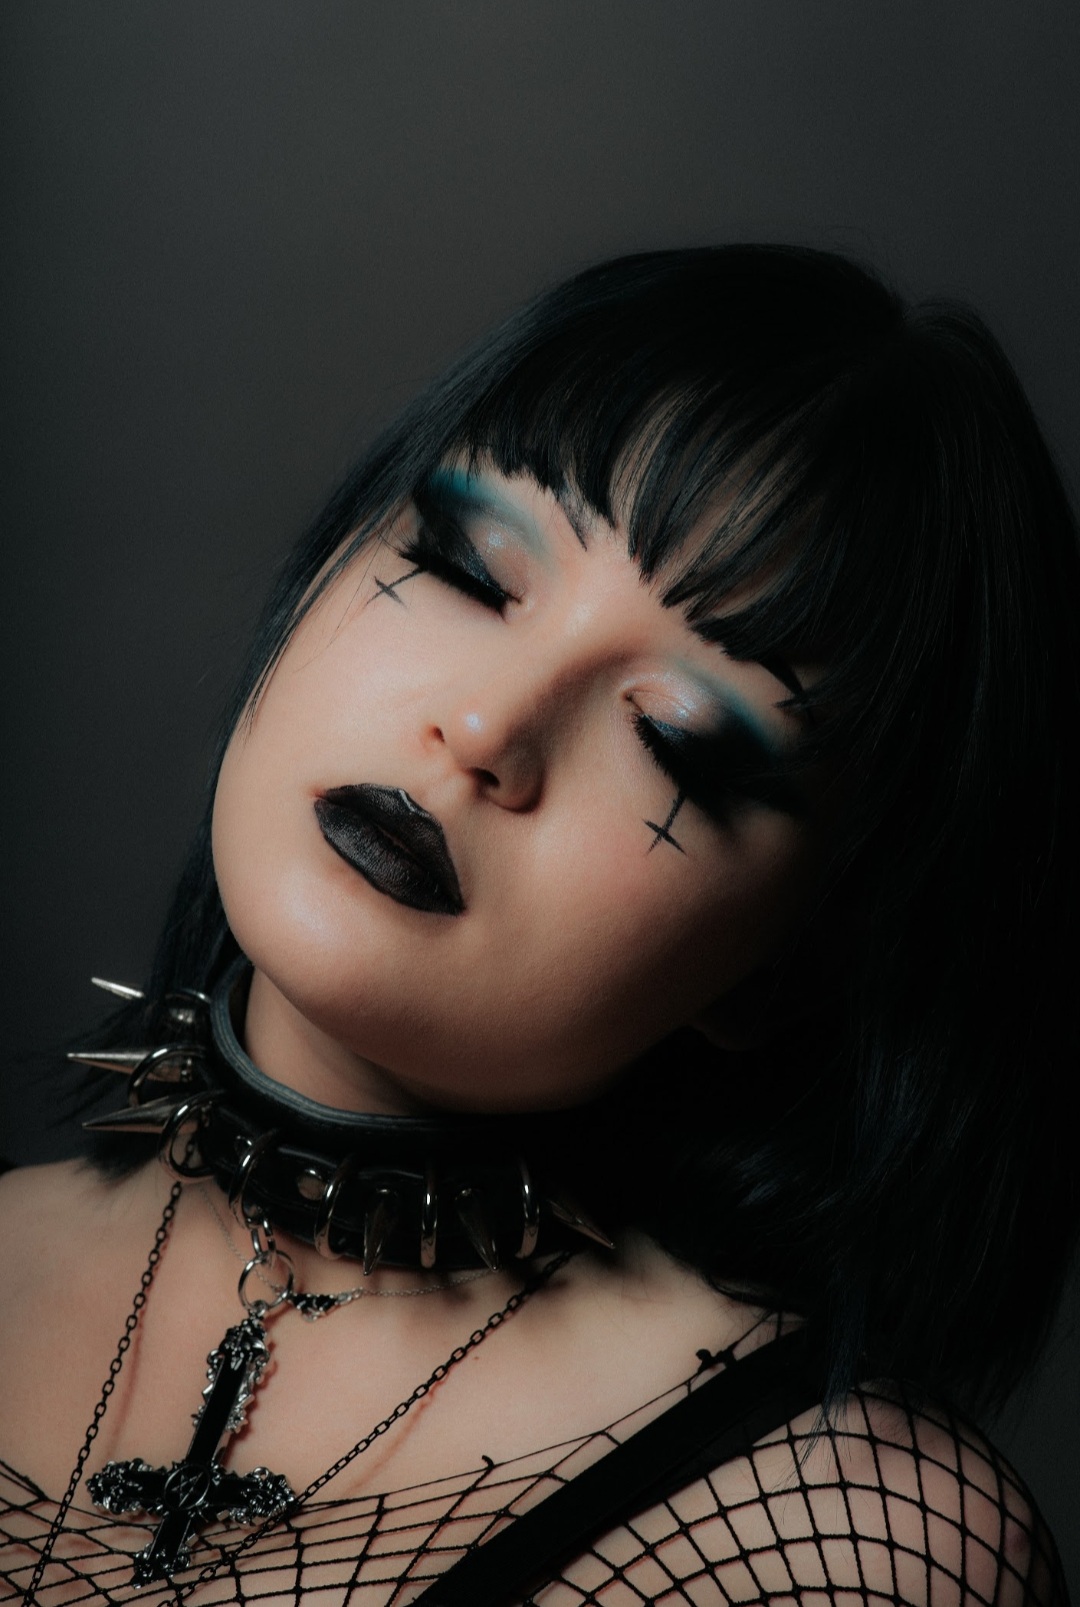 Gothic editorial makeup, Photographer: Keiran White